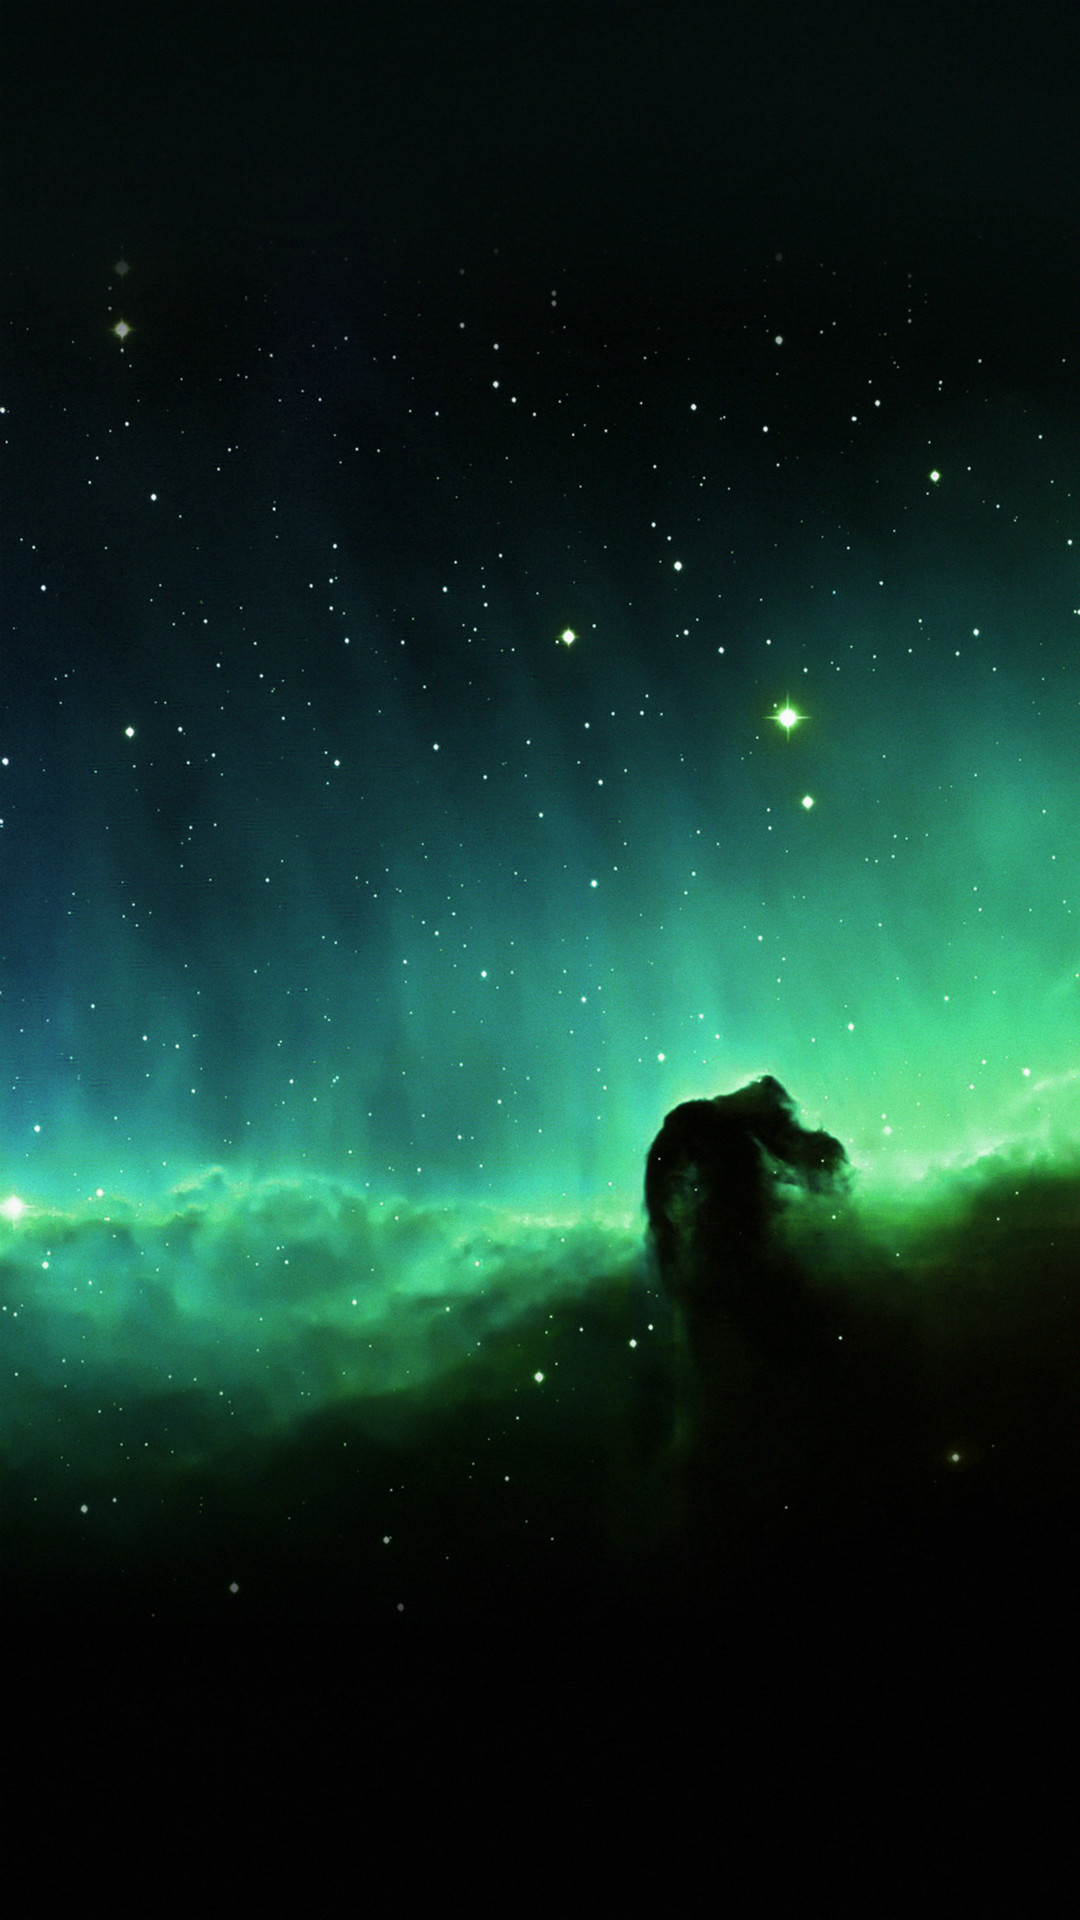 Green Nebula